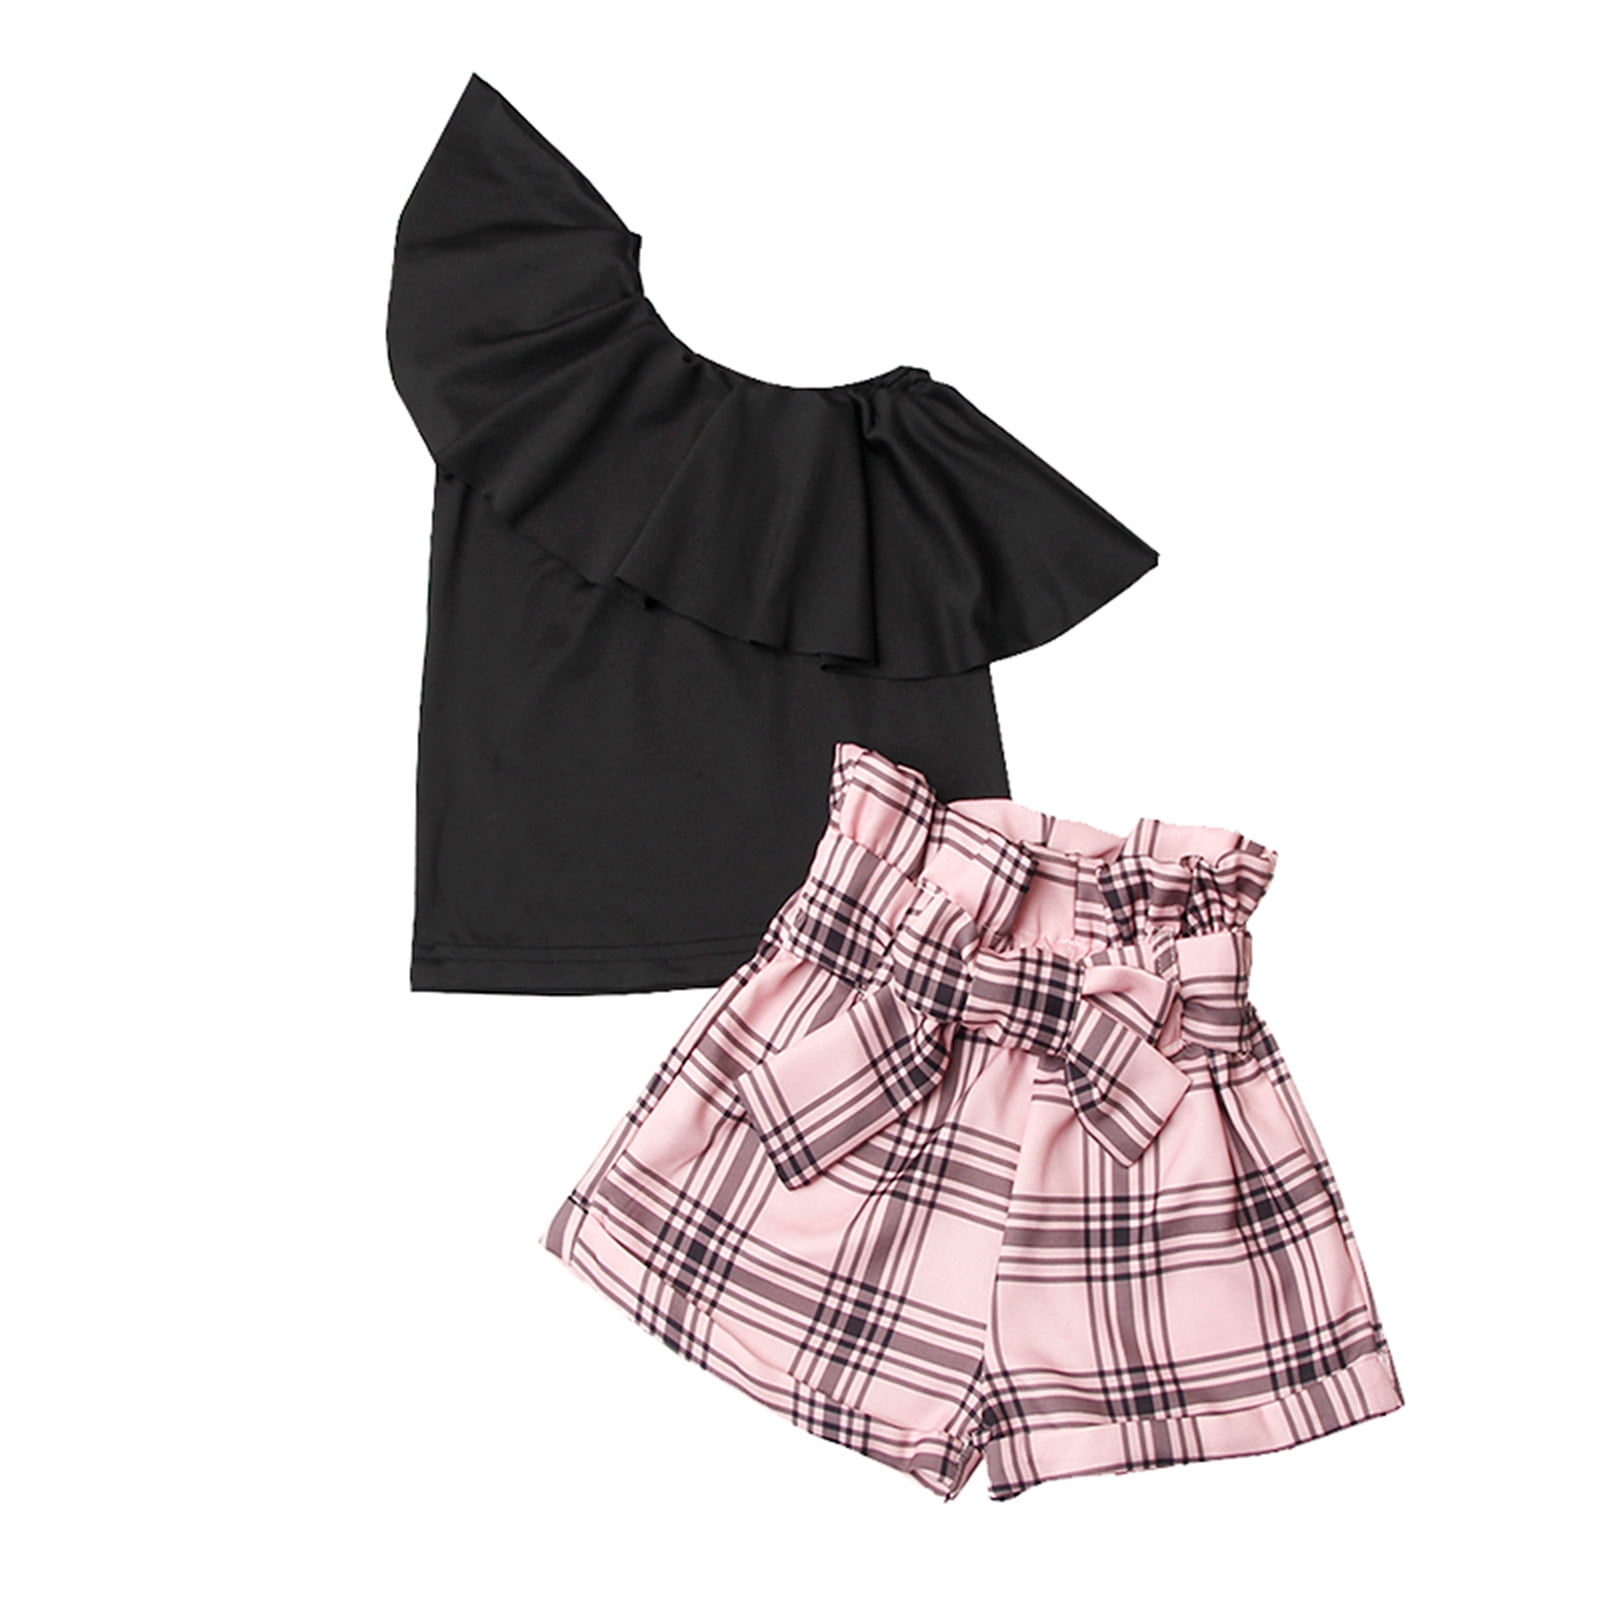 KI-8jcuD Summer Outfit Sleeveless Girl Toddler Kids Girls Clothes ...